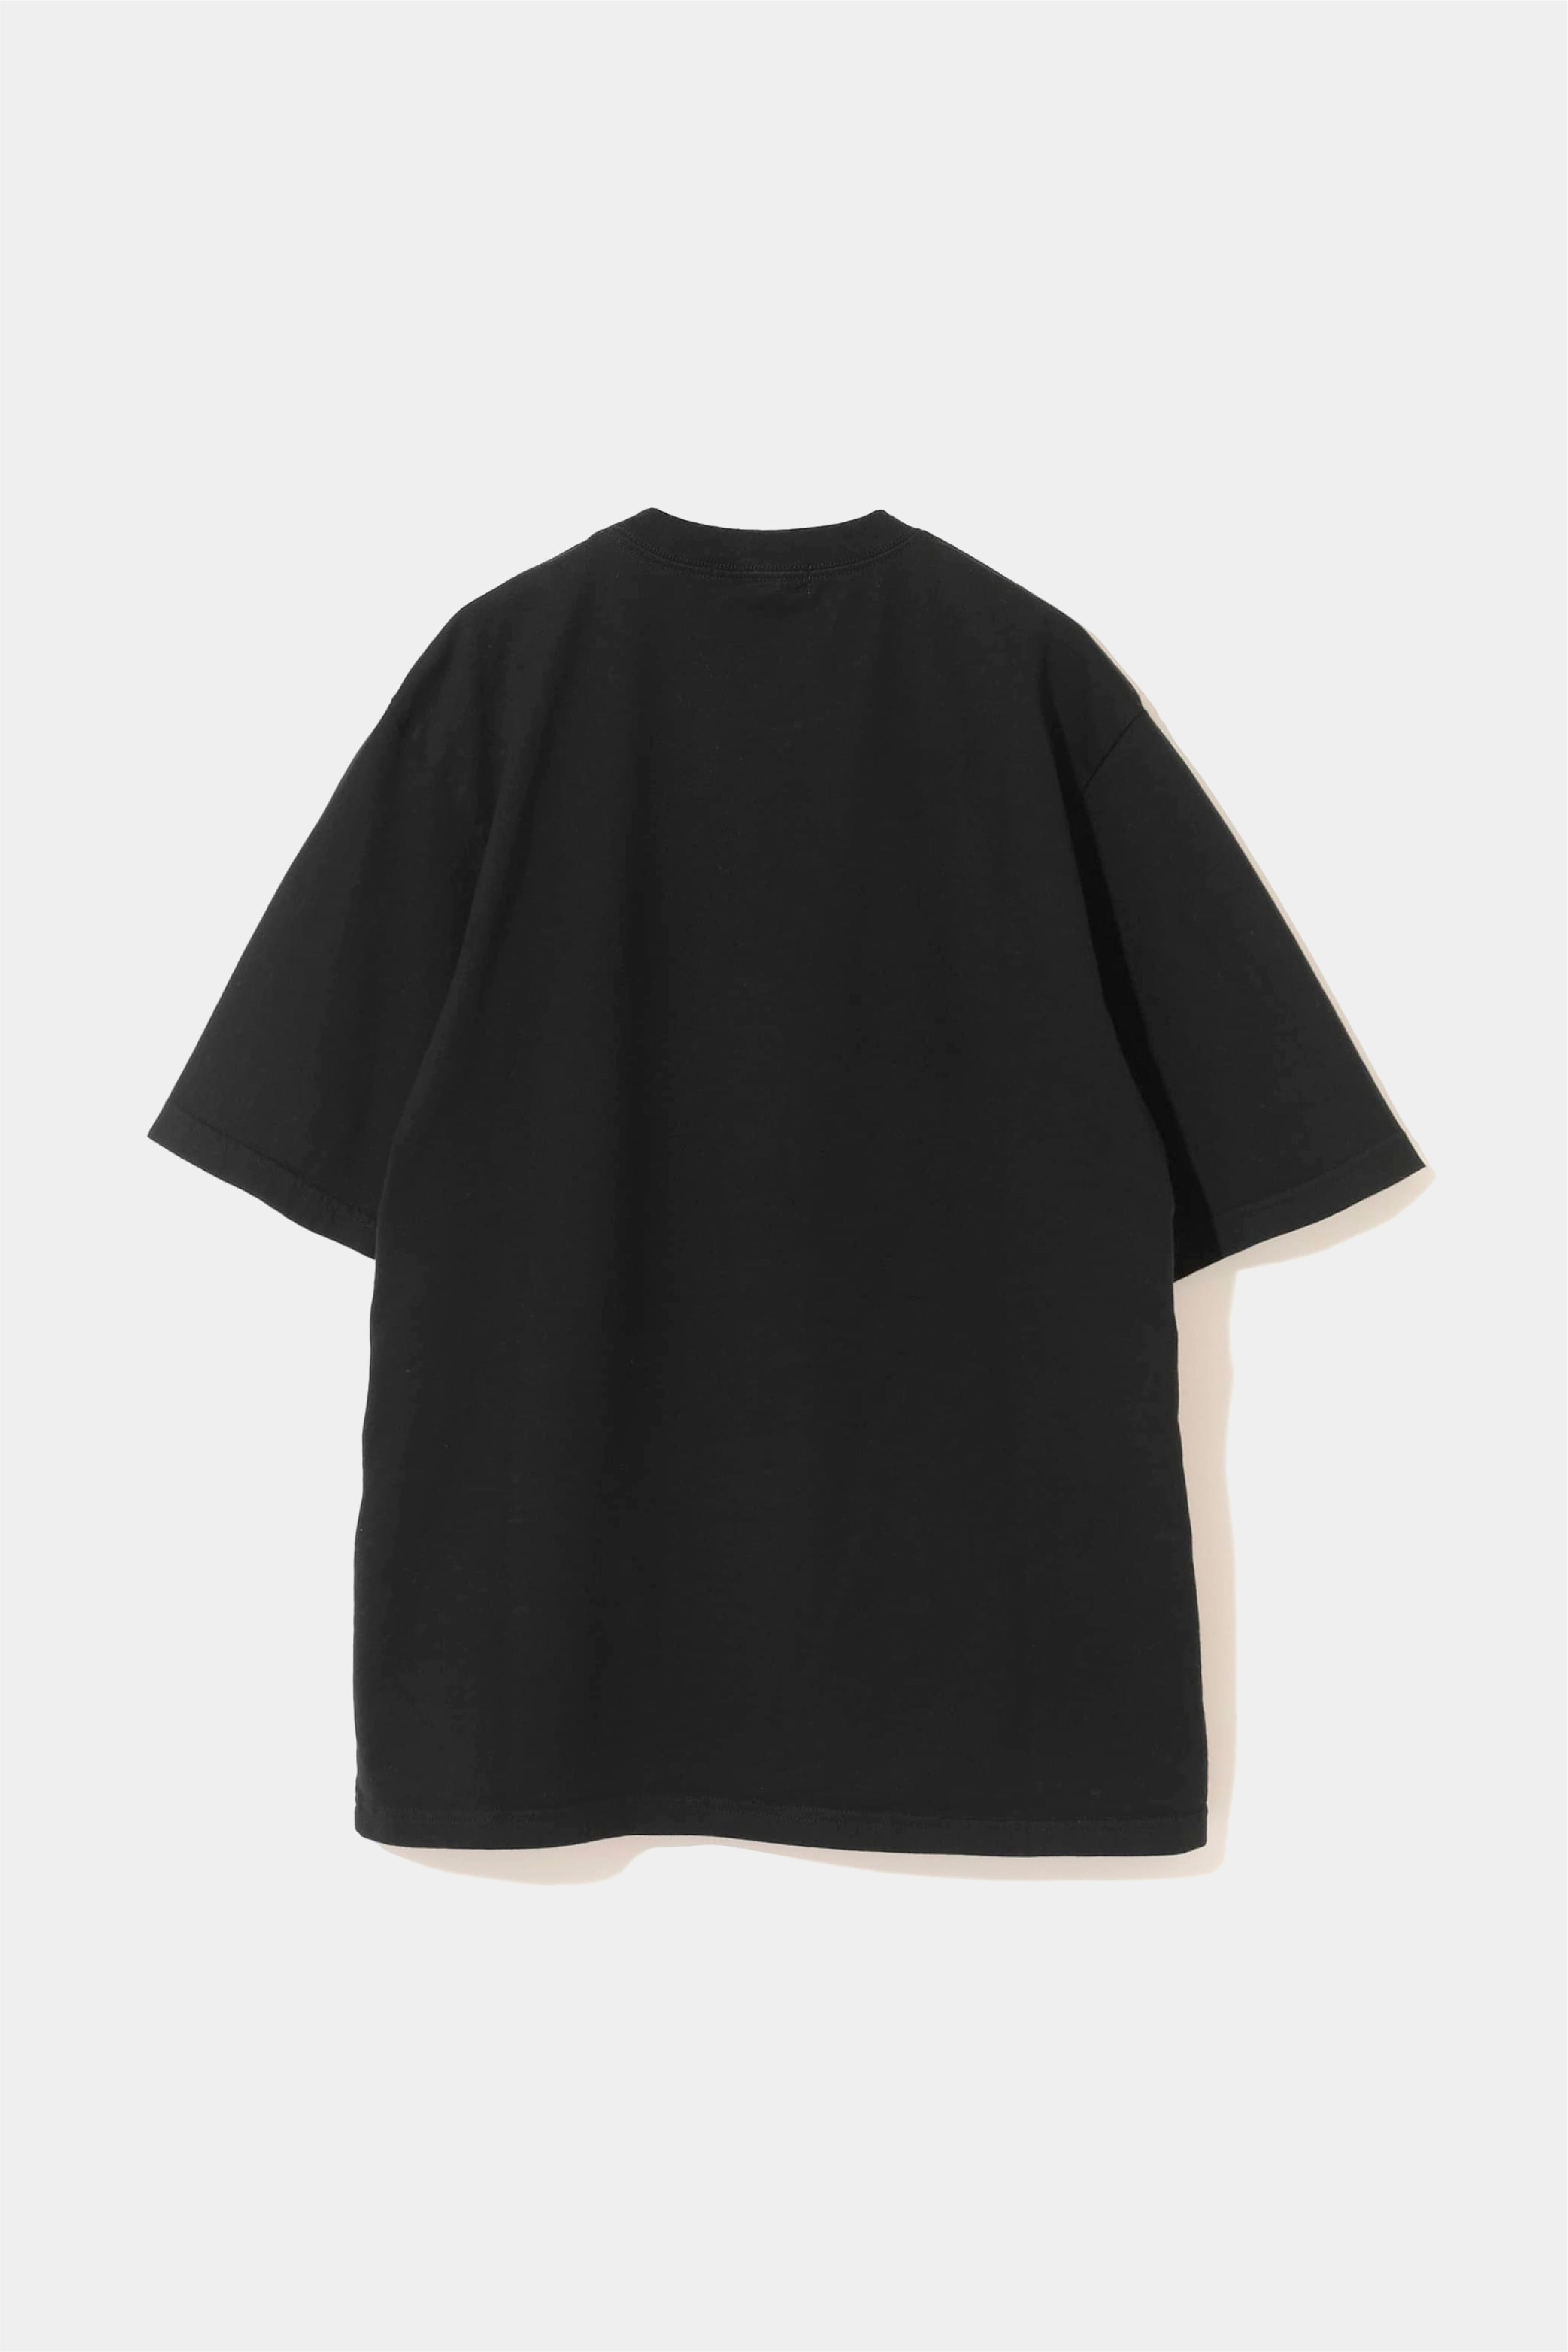 Selectshop FRAME - UNDERCOVER Rebel T-Shirt T-Shirts Concept Store Dubai